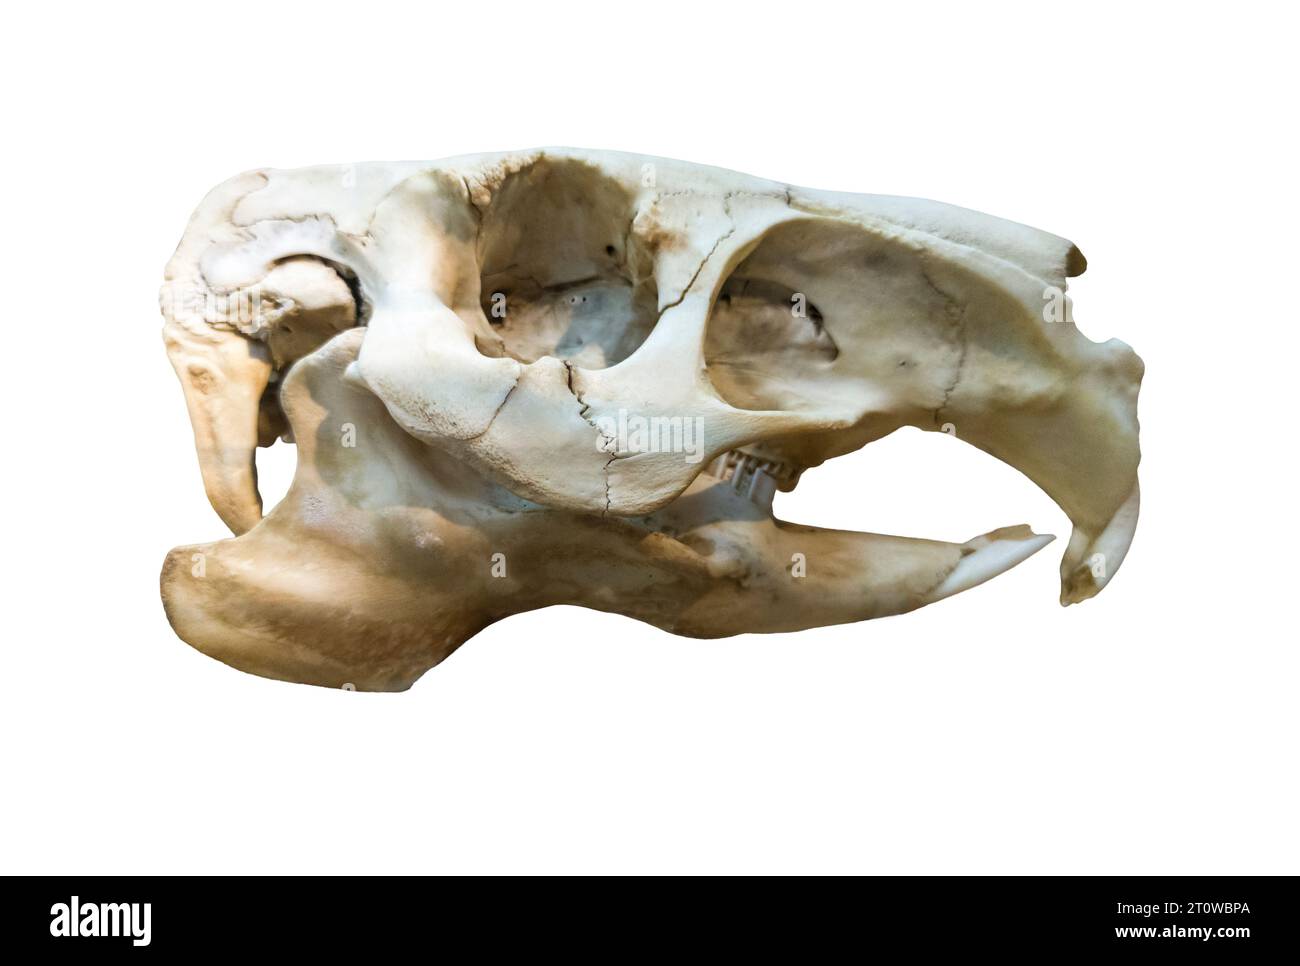 Crâne de capybara ou Hydrochoerus hydrochaeris, le plus grand rongeur du monde. Isolé sur fond blanc Banque D'Images